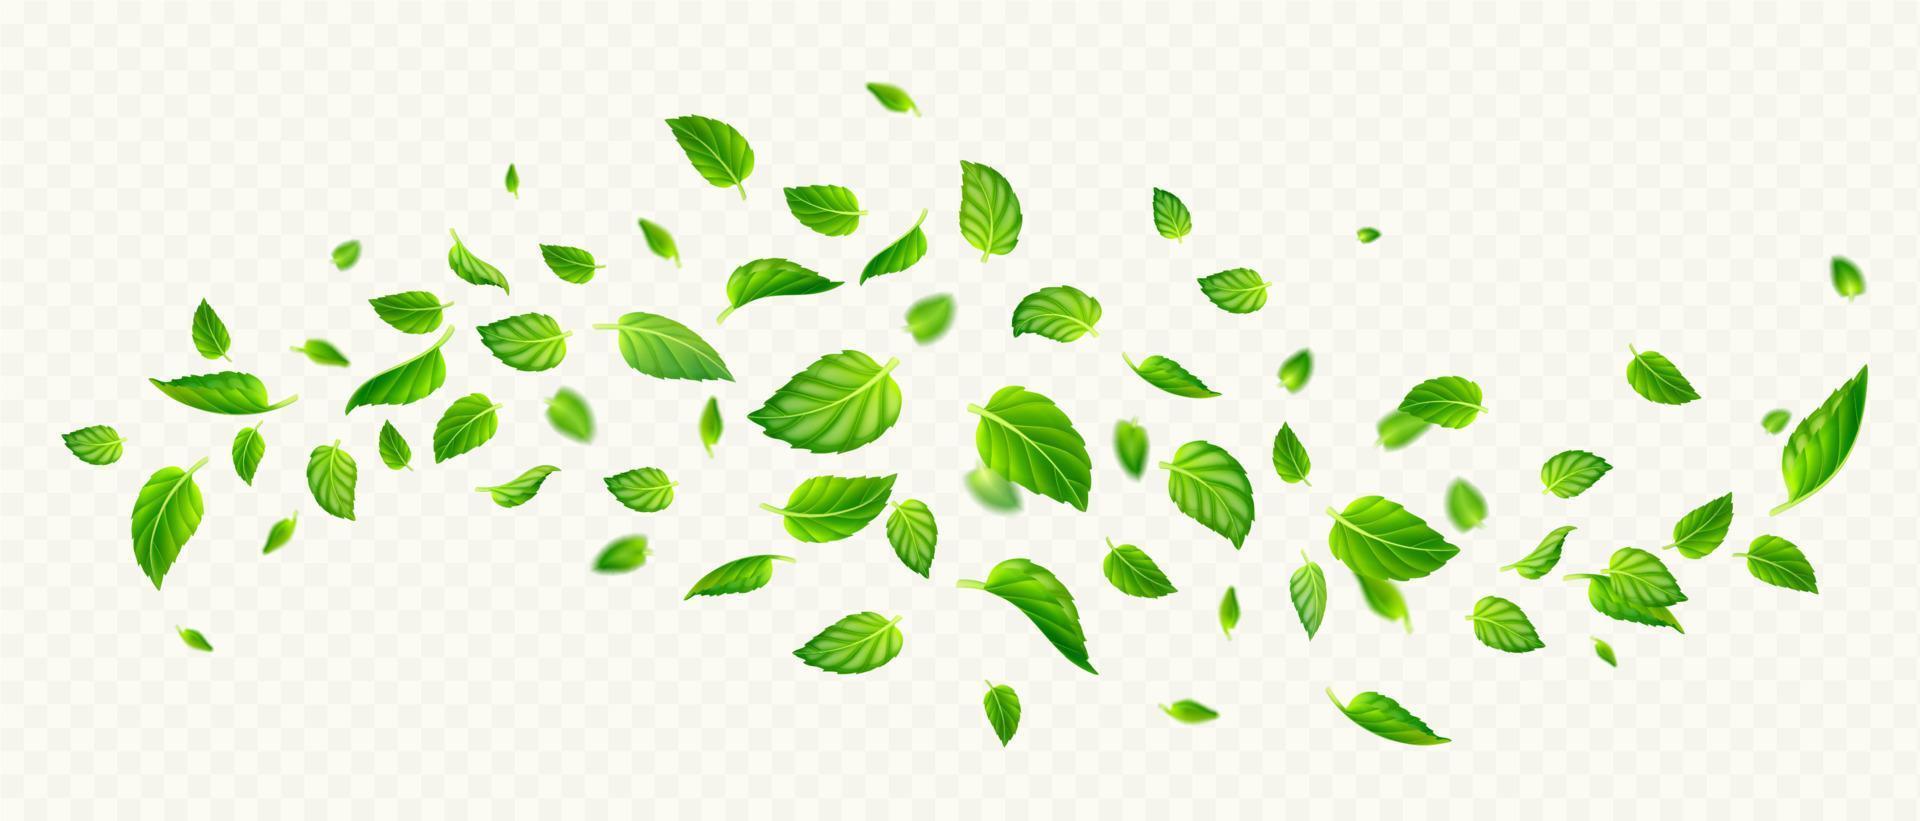 vert menthe feuilles chute et en volant dans air vecteur